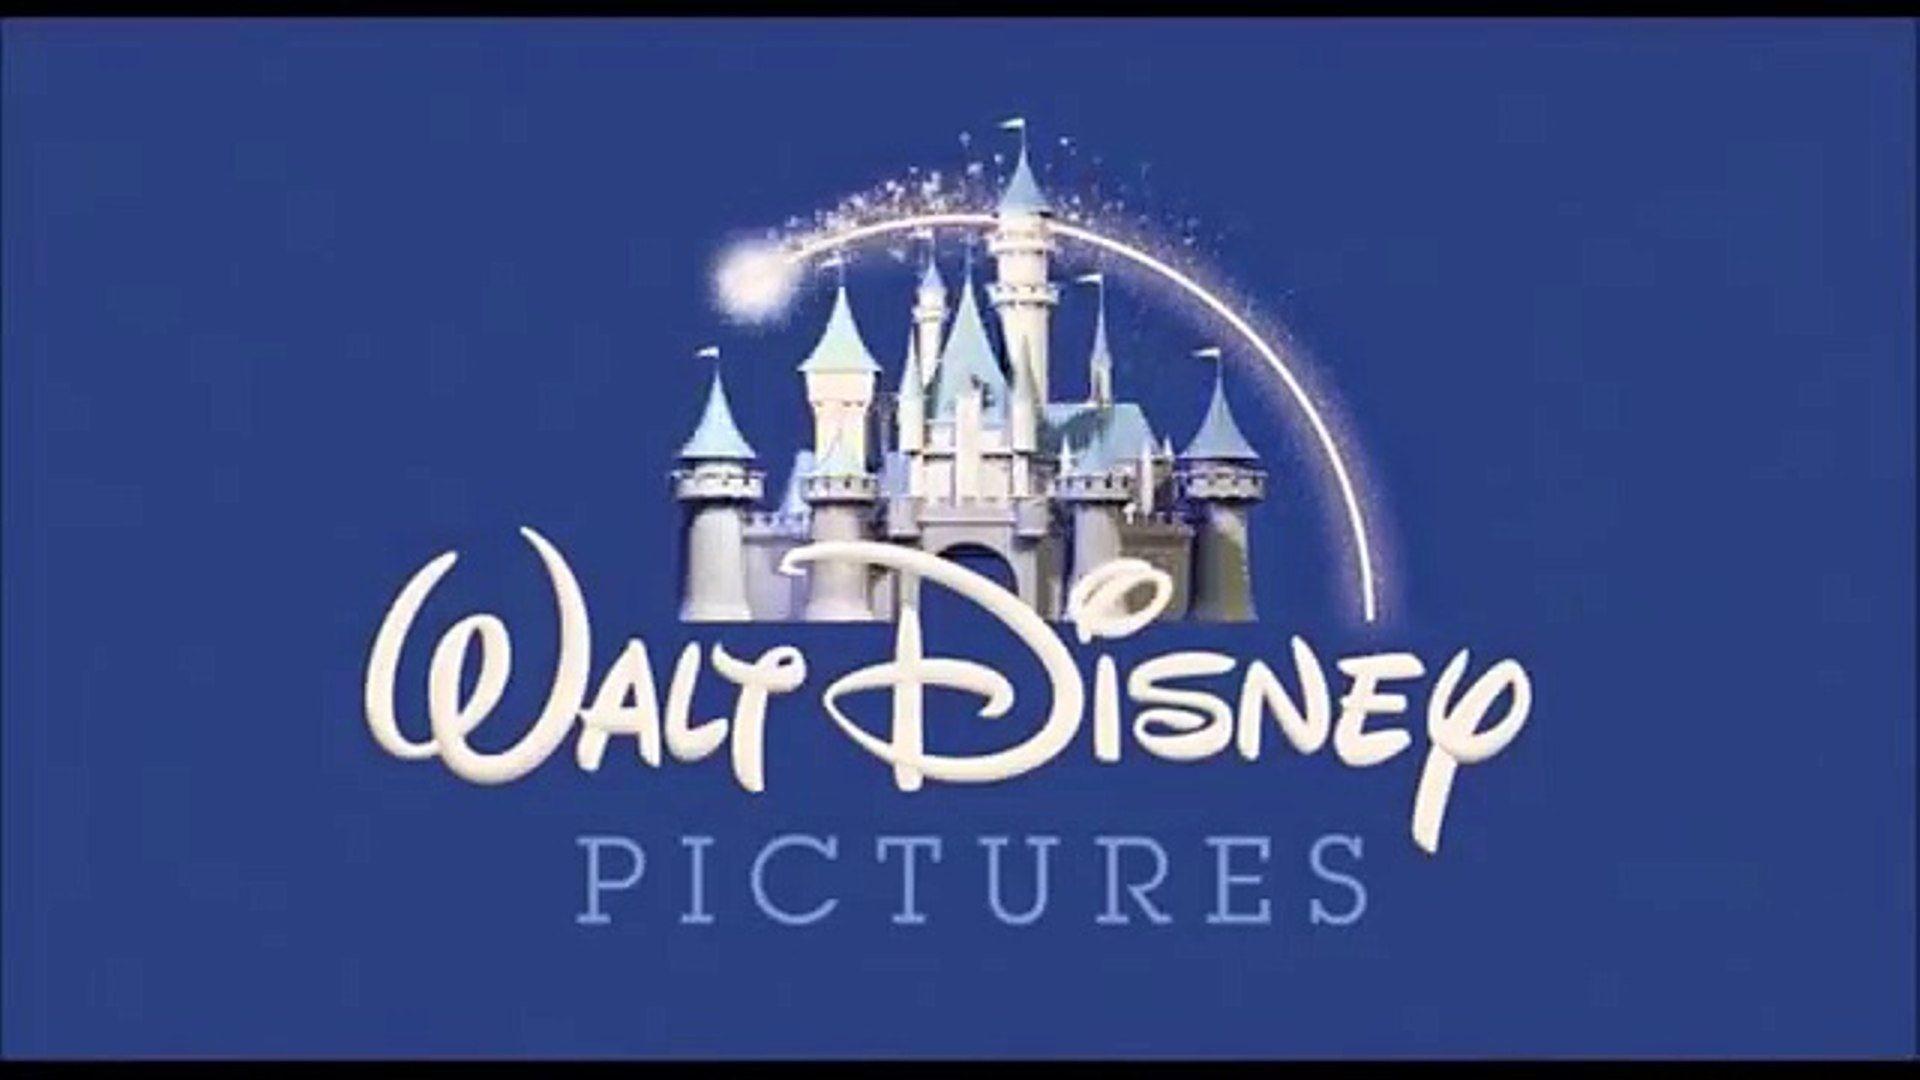 Pixar Animation Studios Logo - Walt Disney Pictures pixar animation studios with wall-e & BnL logo ...